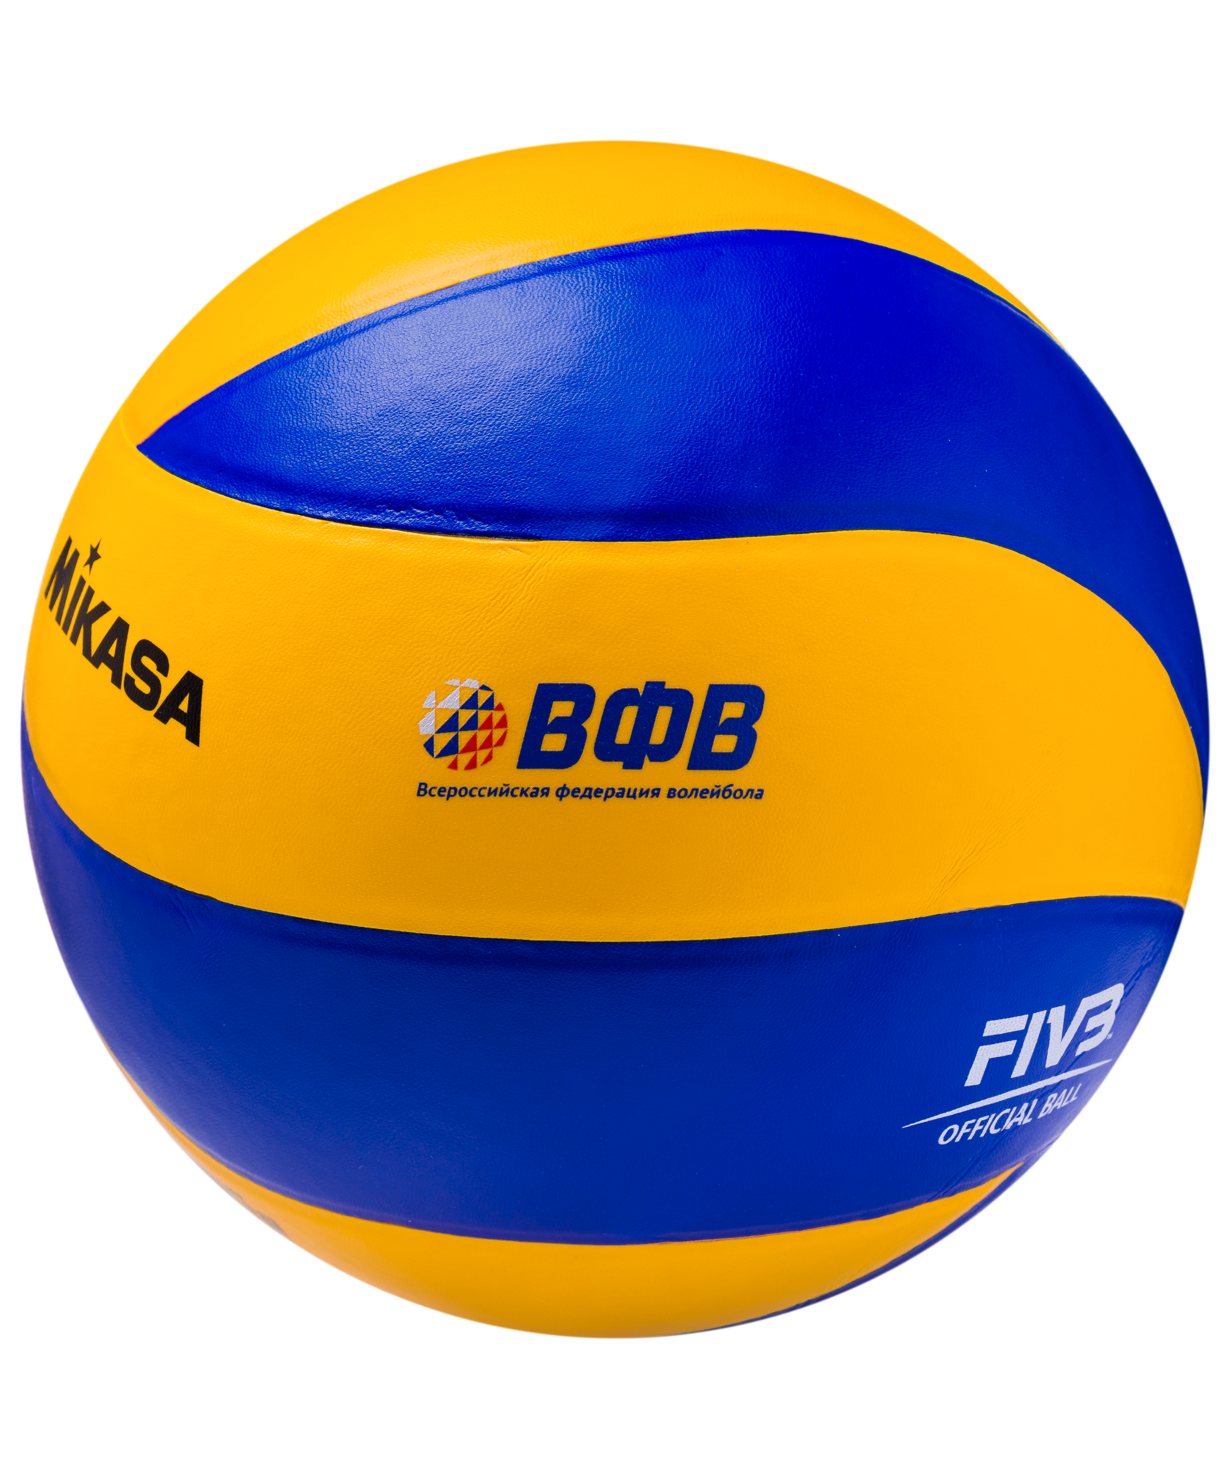 Волейбольный мяч. Мяч Mikasa MVA 310. Мяч волейбольный Mikasa mva310. Волейбольный мяч Mikasa MVA 390. Мяч волейбольный Микаса MVA 310.